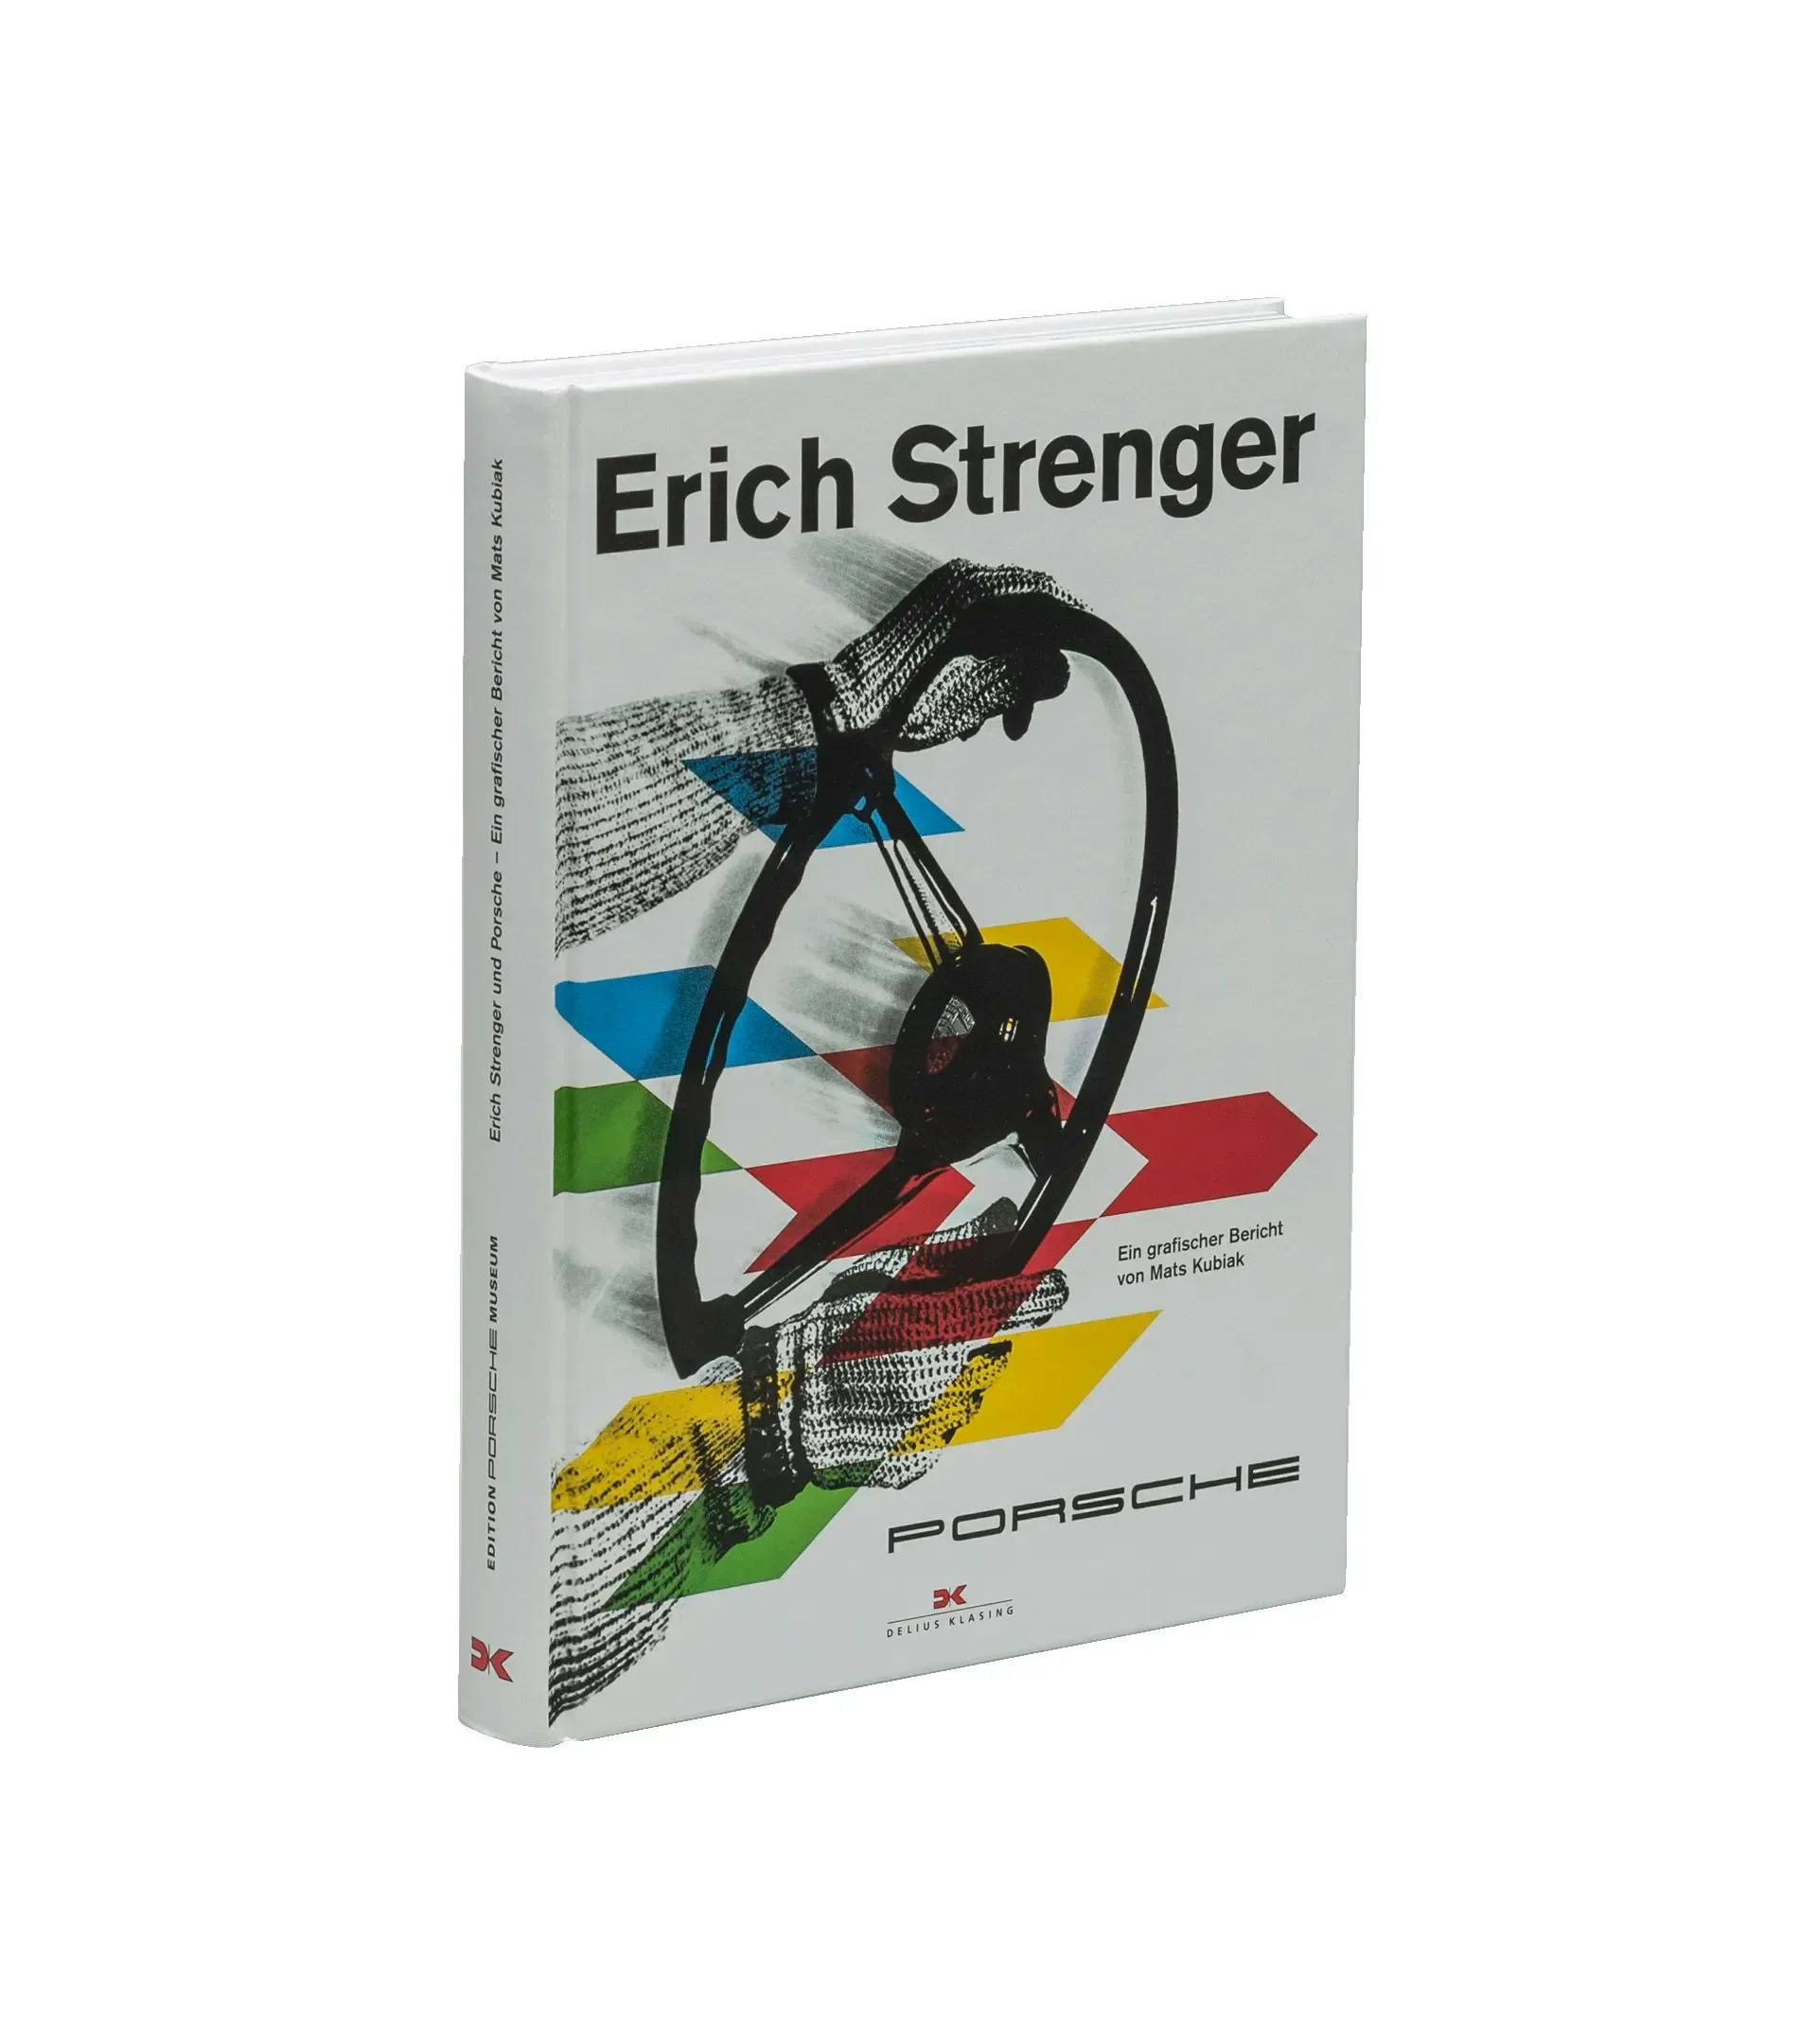 E. Strenger und Porsche, book (EPM) 1